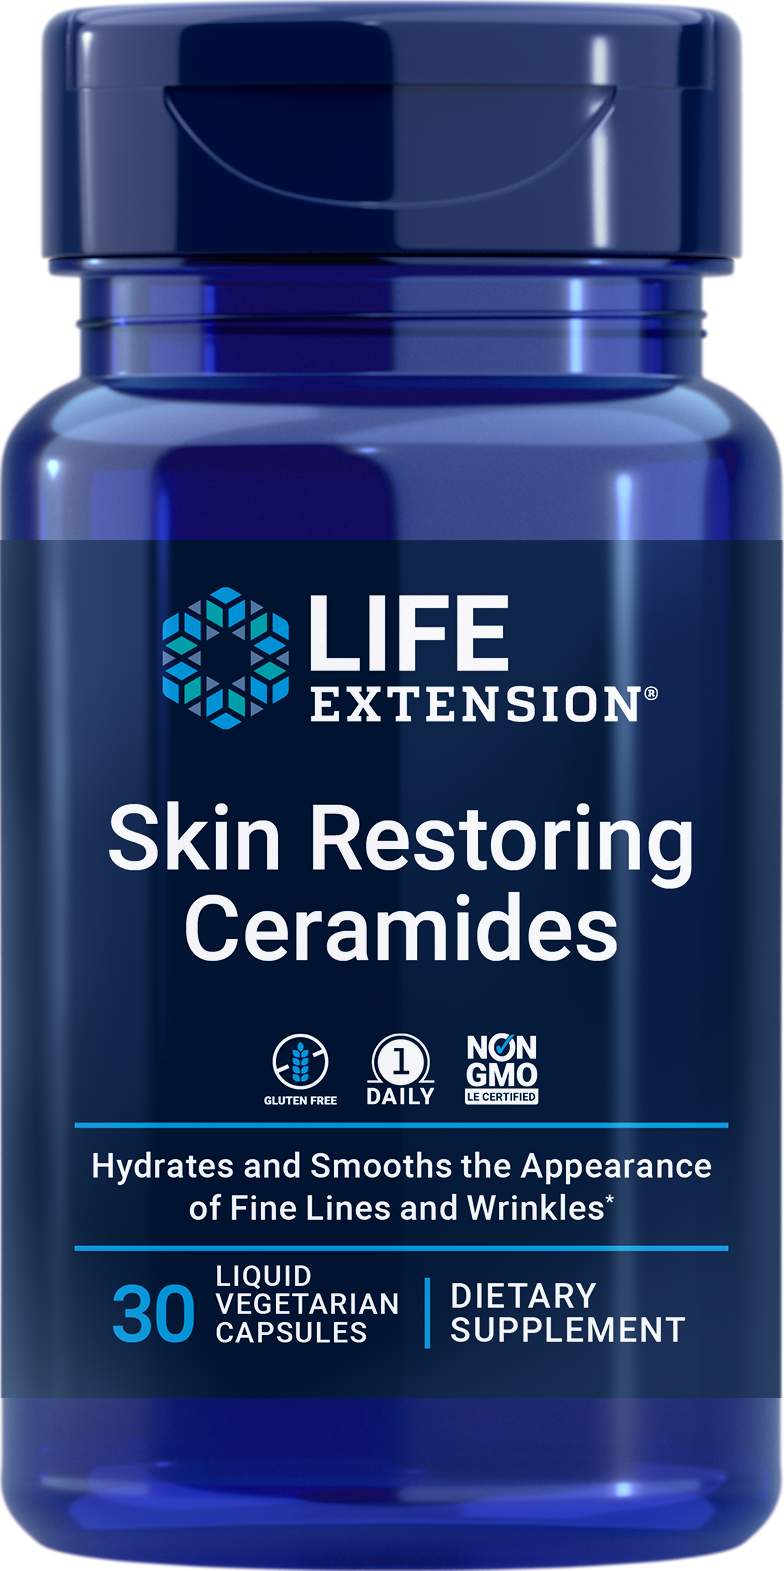 Skin Restoring Ceramides